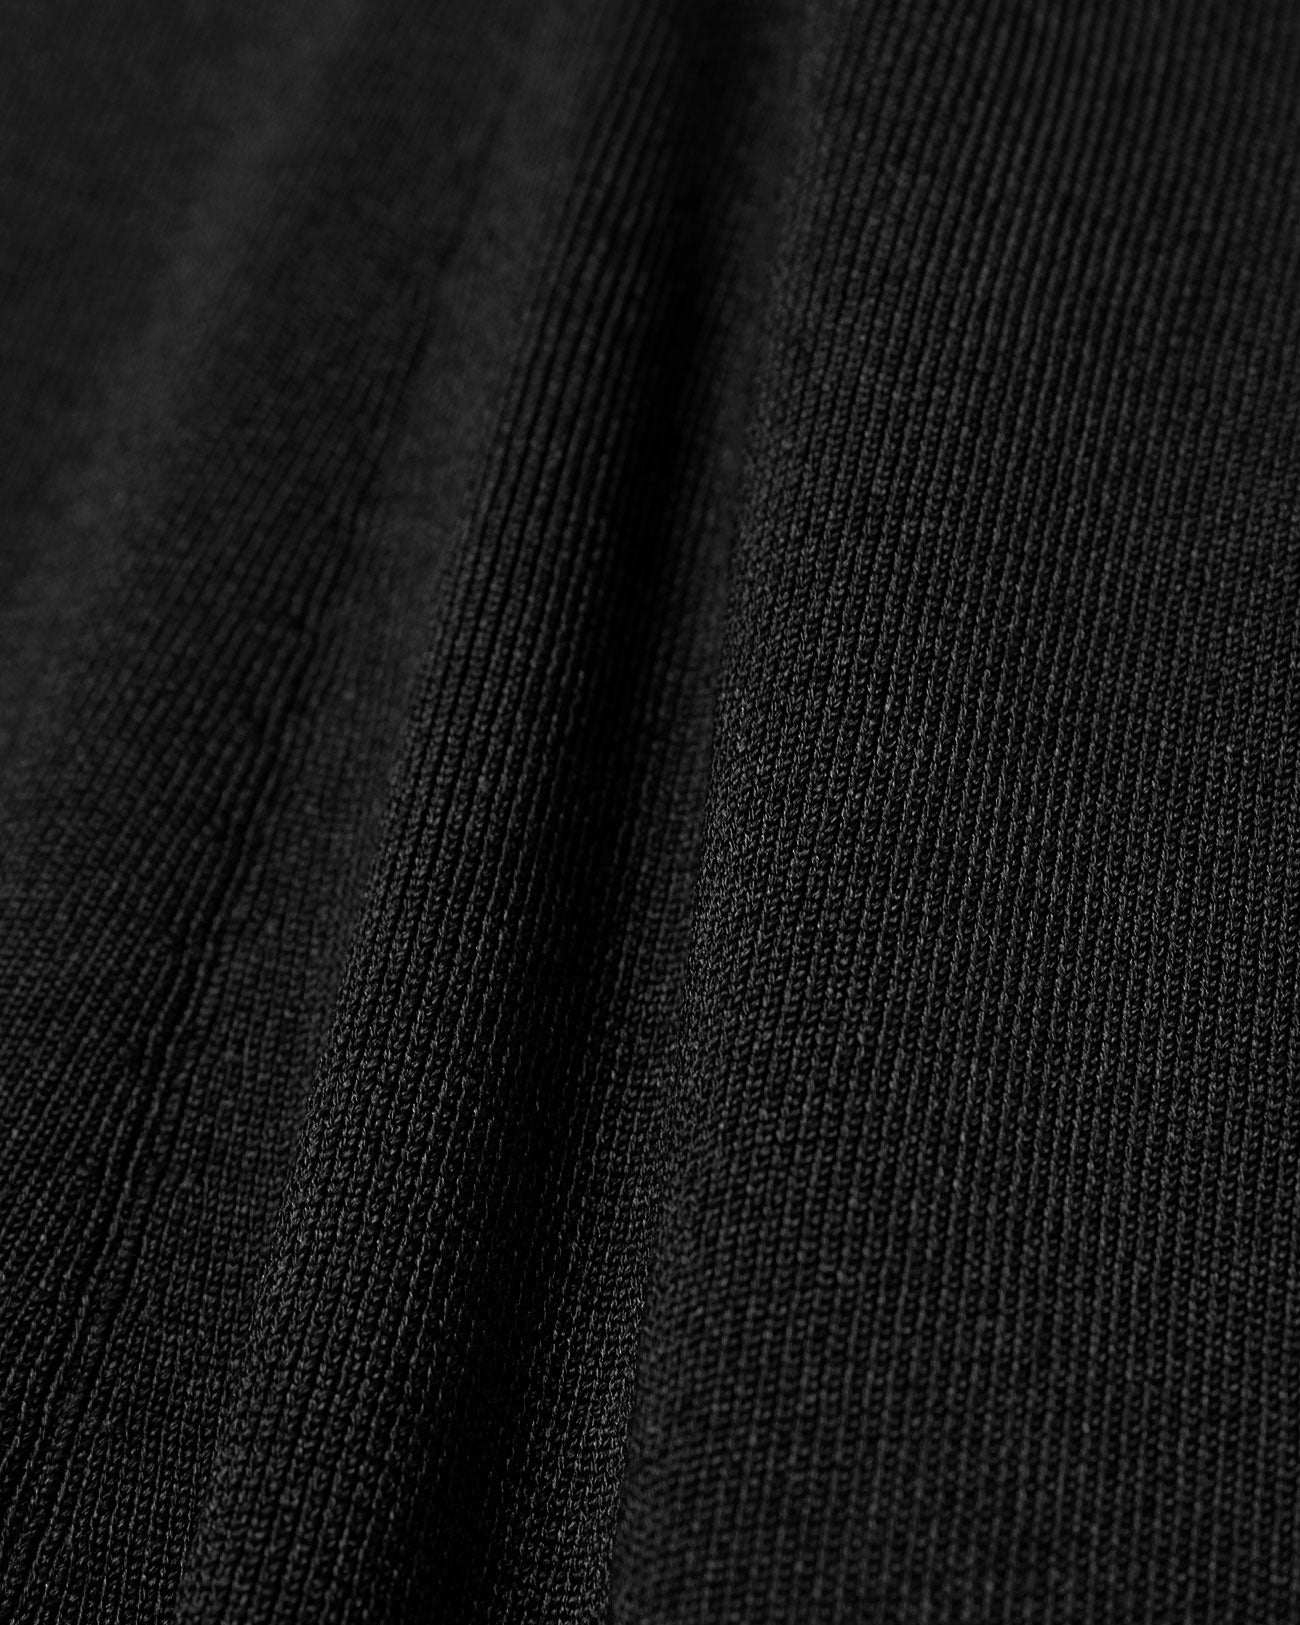 Knitted Inner Shorts - black